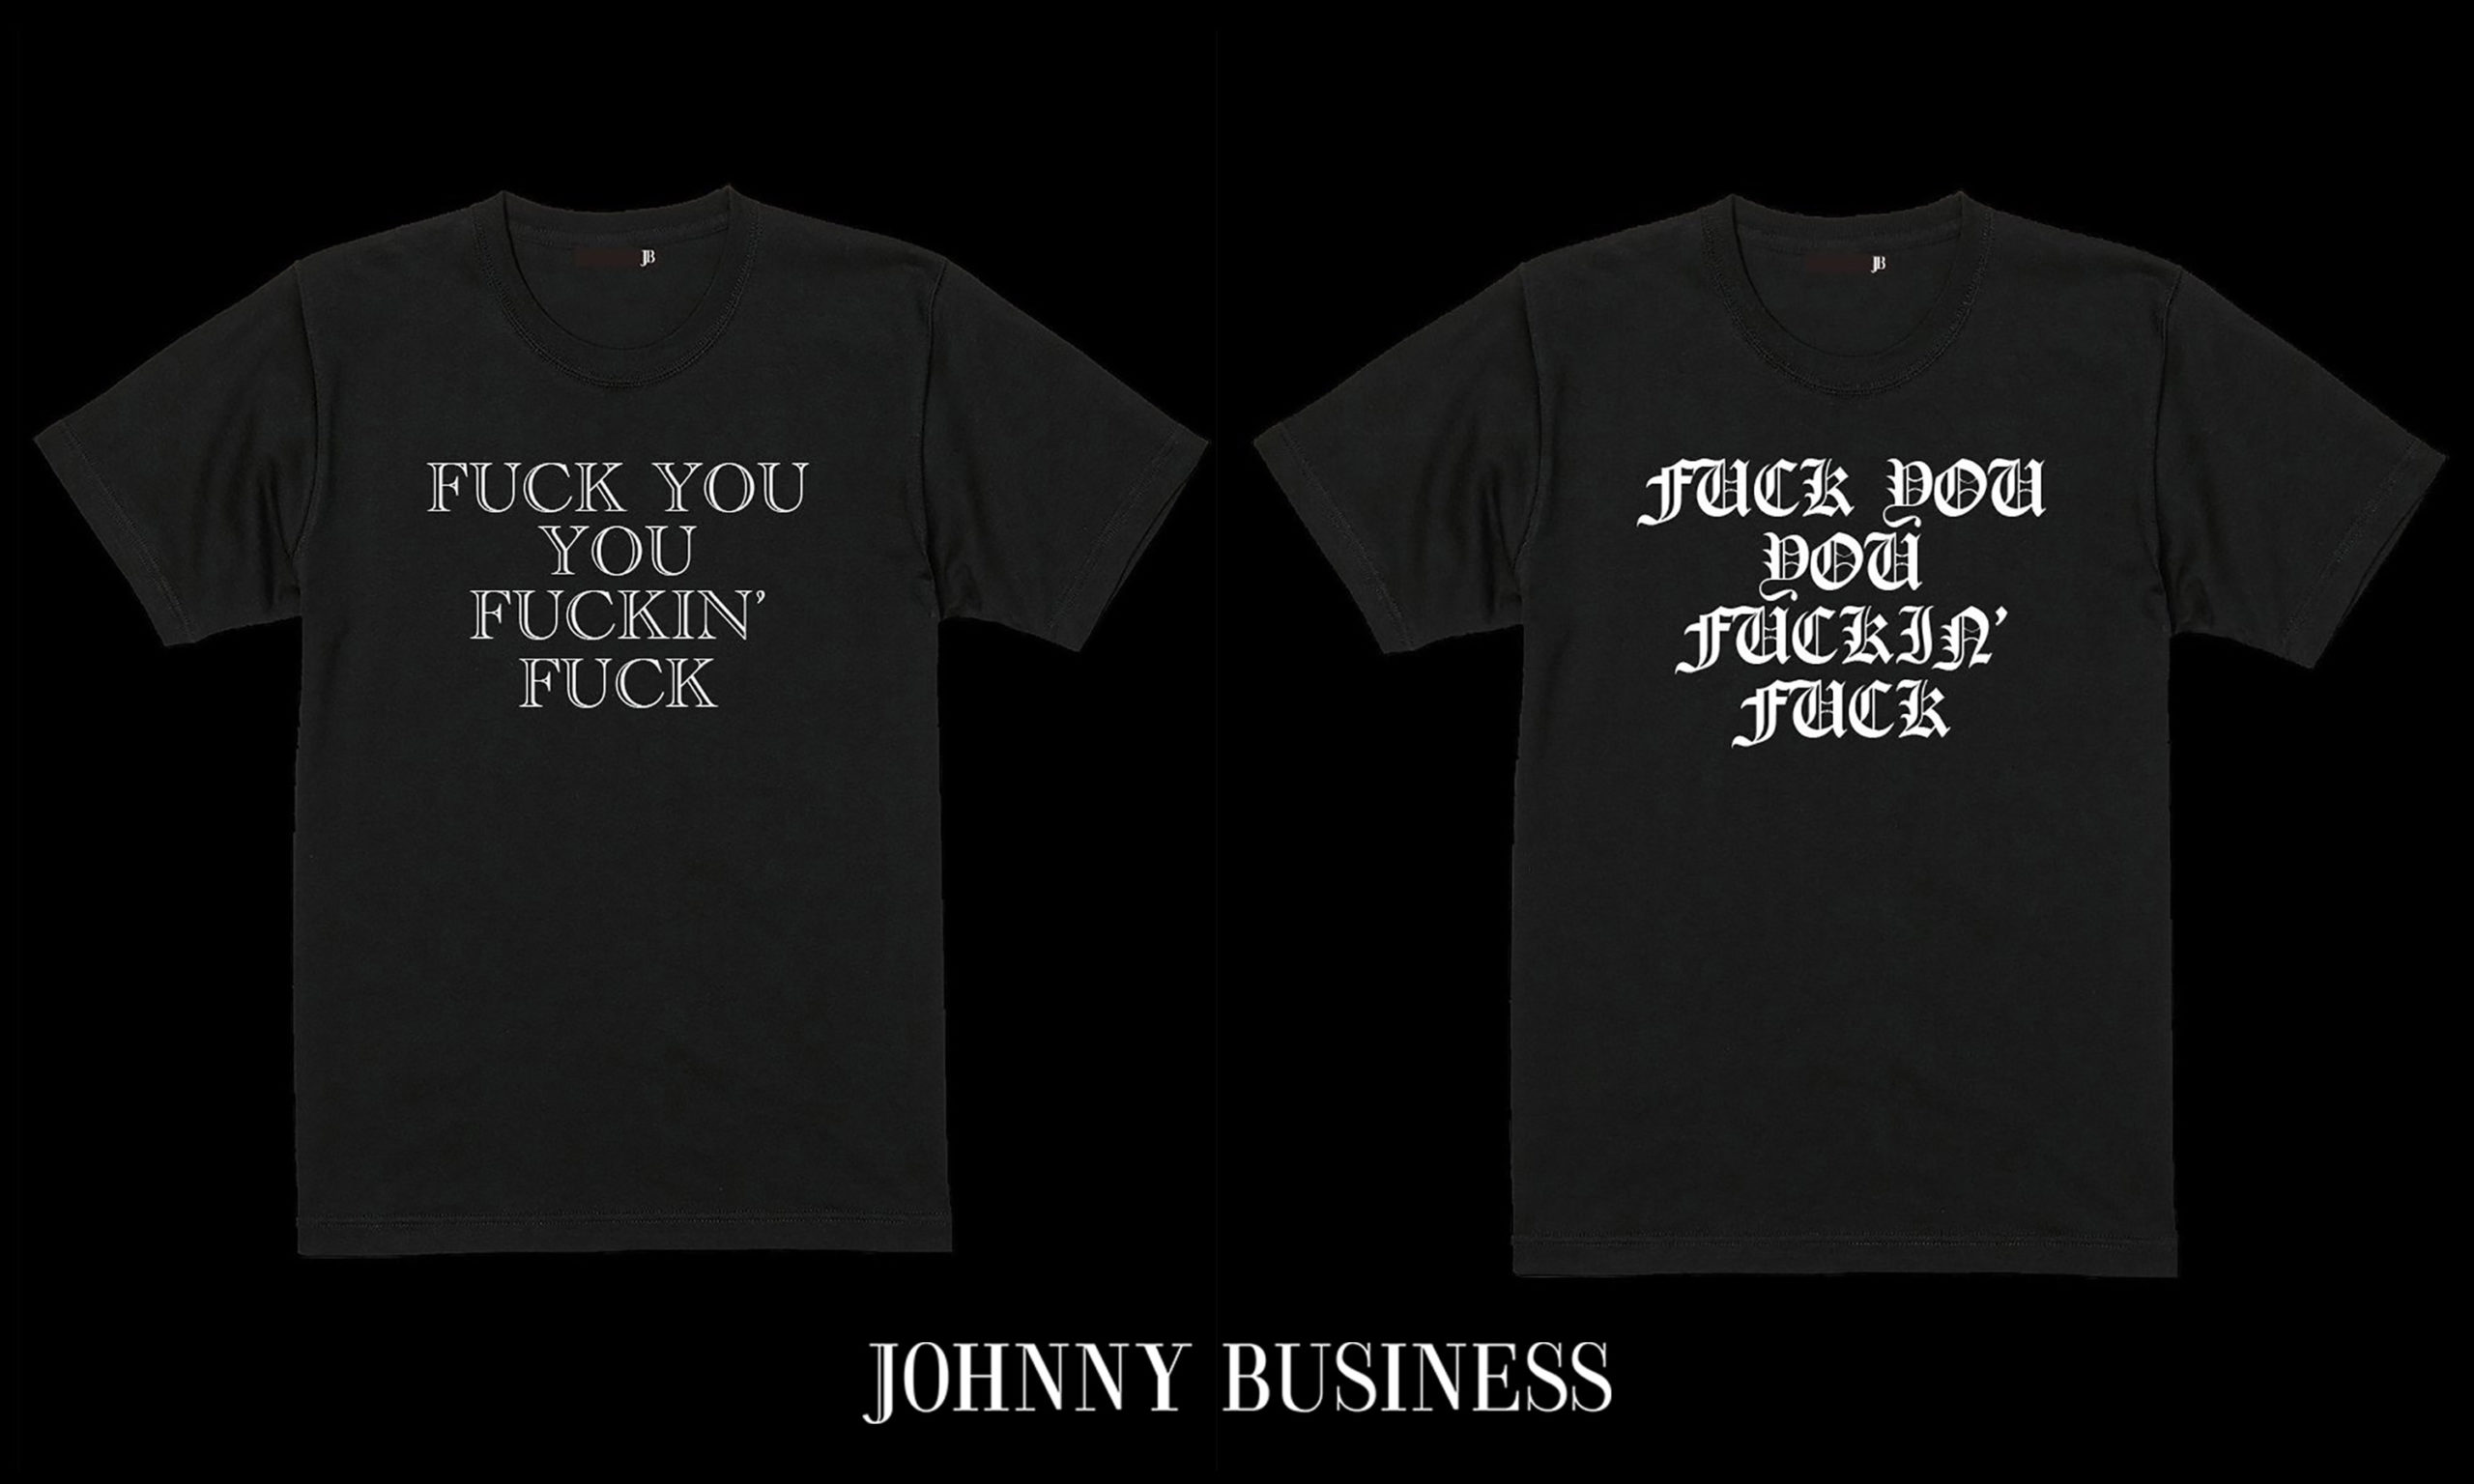 JOHNNY BUSINESS 人気デザインが定番に！Tシャツ2型が発売！